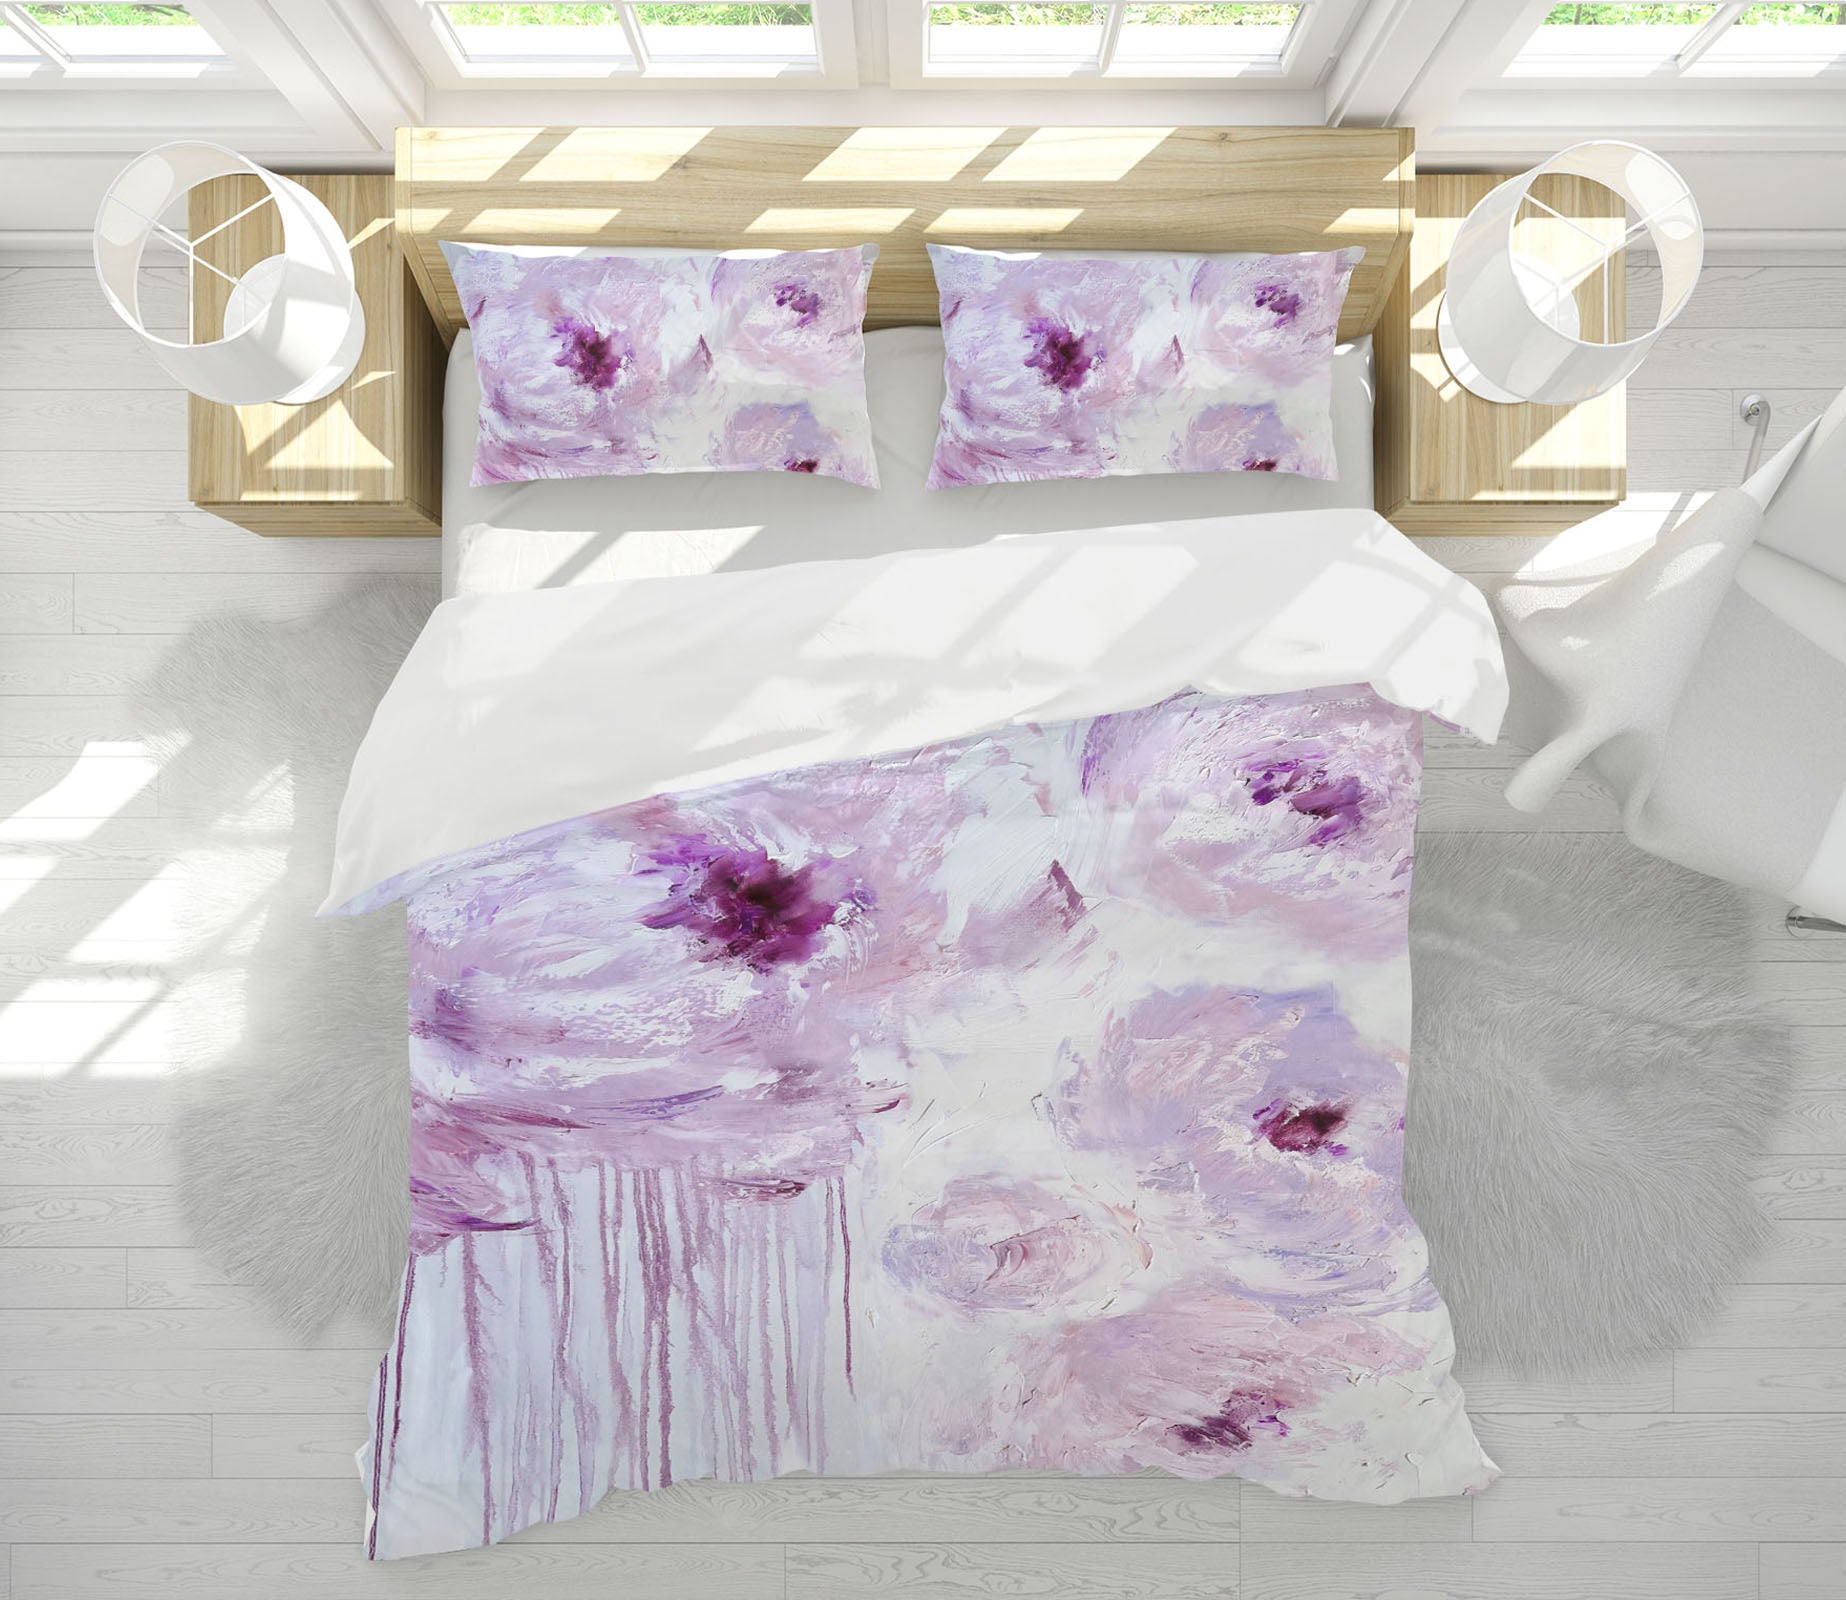 3D Pink Flowers 3791 Skromova Marina Bedding Bed Pillowcases Quilt Cover Duvet Cover